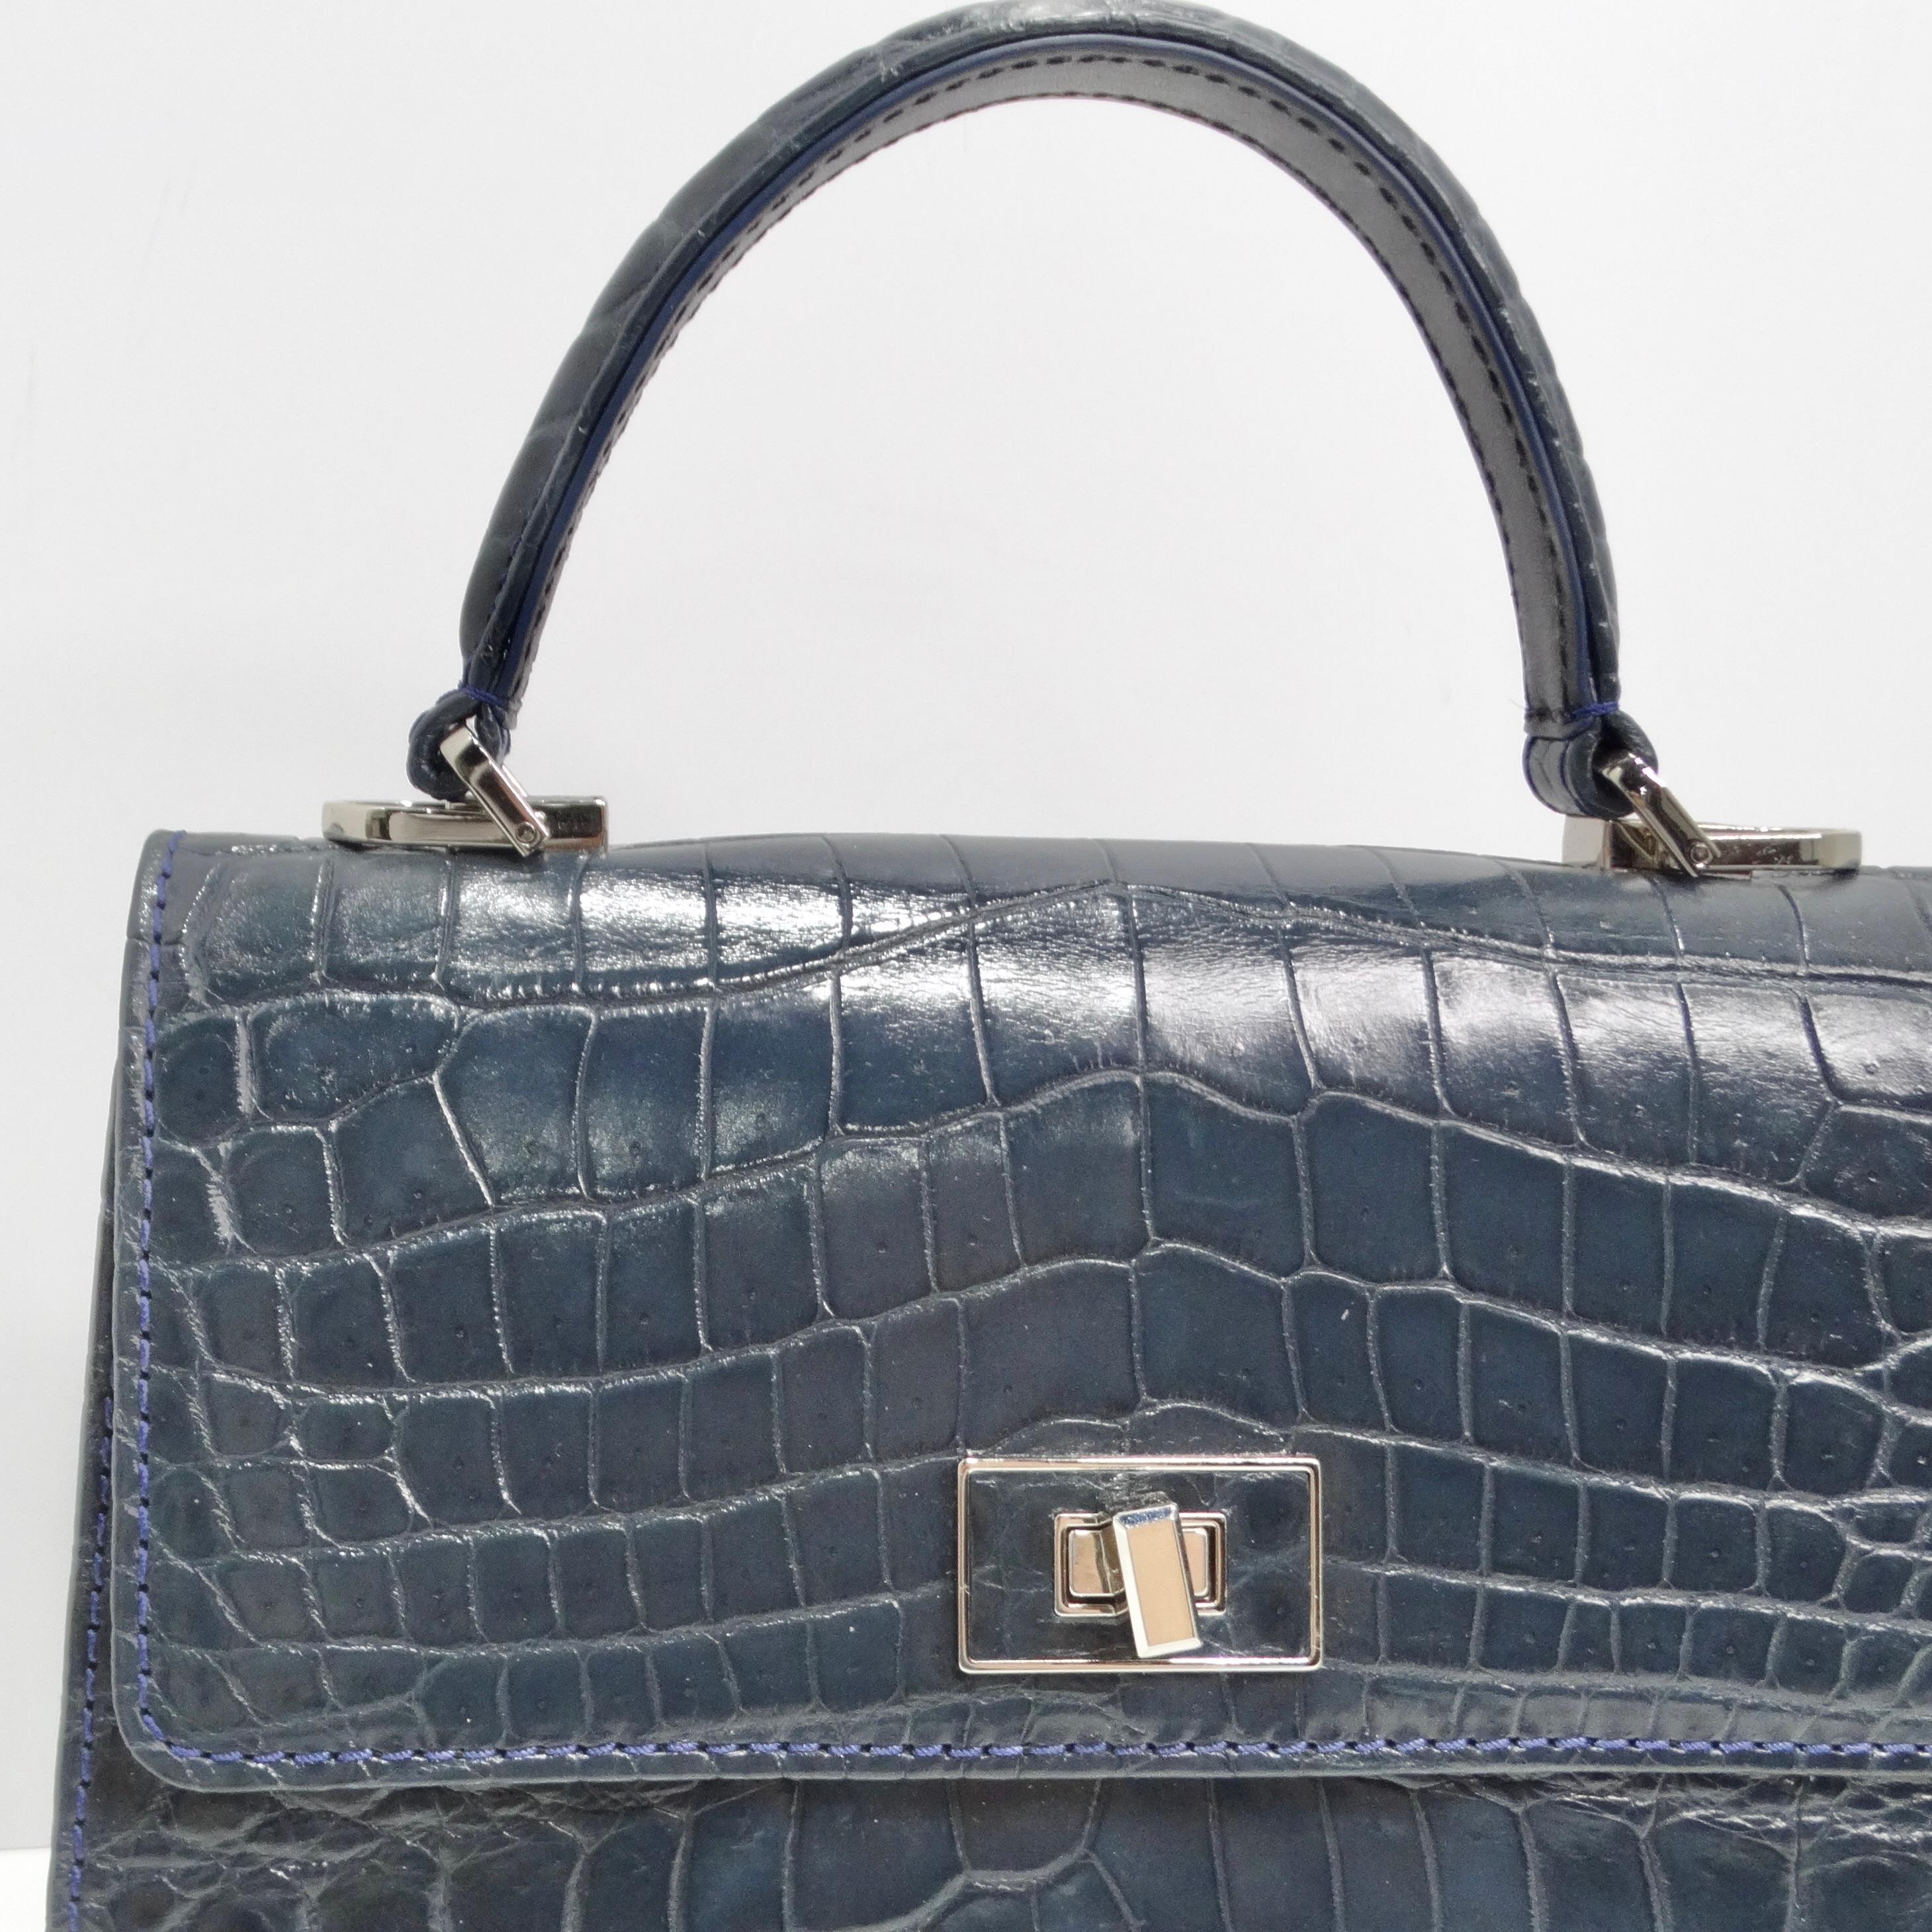 Le sac à poignée supérieure en cuir de crocodile bleu de BC Luxury est un accessoire étonnant qui allie l'élégance intemporelle à la sophistication moderne. Confectionné en luxueux cuir de crocodile bleu marine, ce sac structuré à poignée supérieure